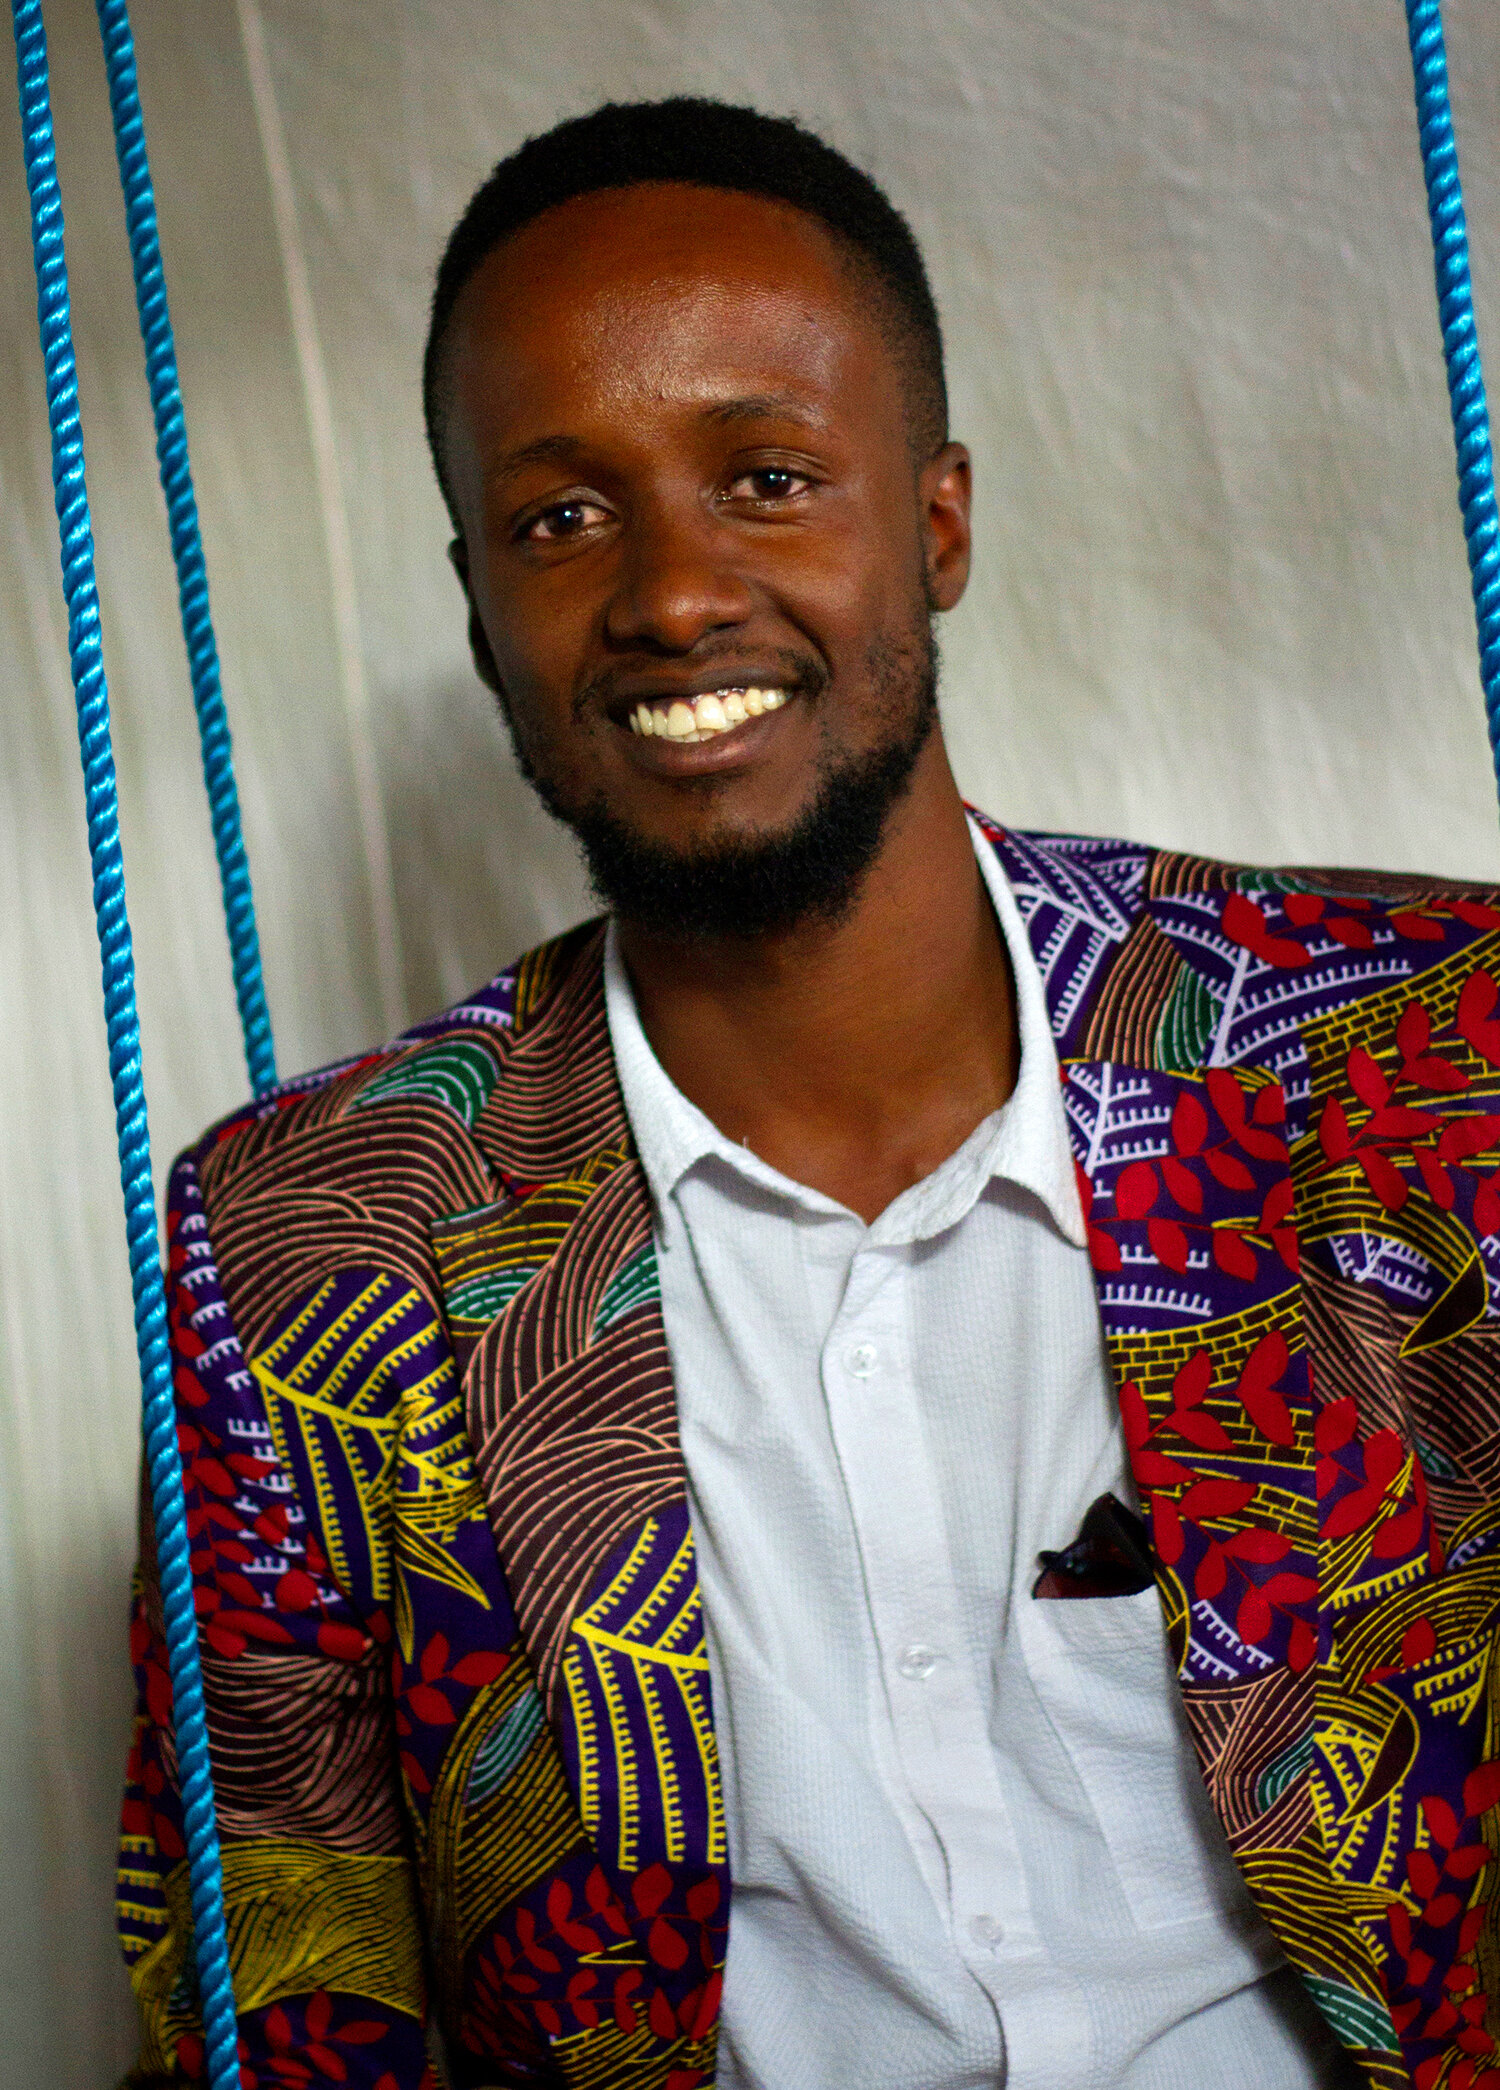 روبرت مونوكو (مستشار مجلس الإدارة) الفنان ورائد الأعمال الإبداعي روبرت هو مؤسس ومدير إبداعي لشركة ماو ماو للفنون، وهي شركة إنتاج أفلام وموسيقى وفنون بصرية أفريقية في نيروبي، كينيا.